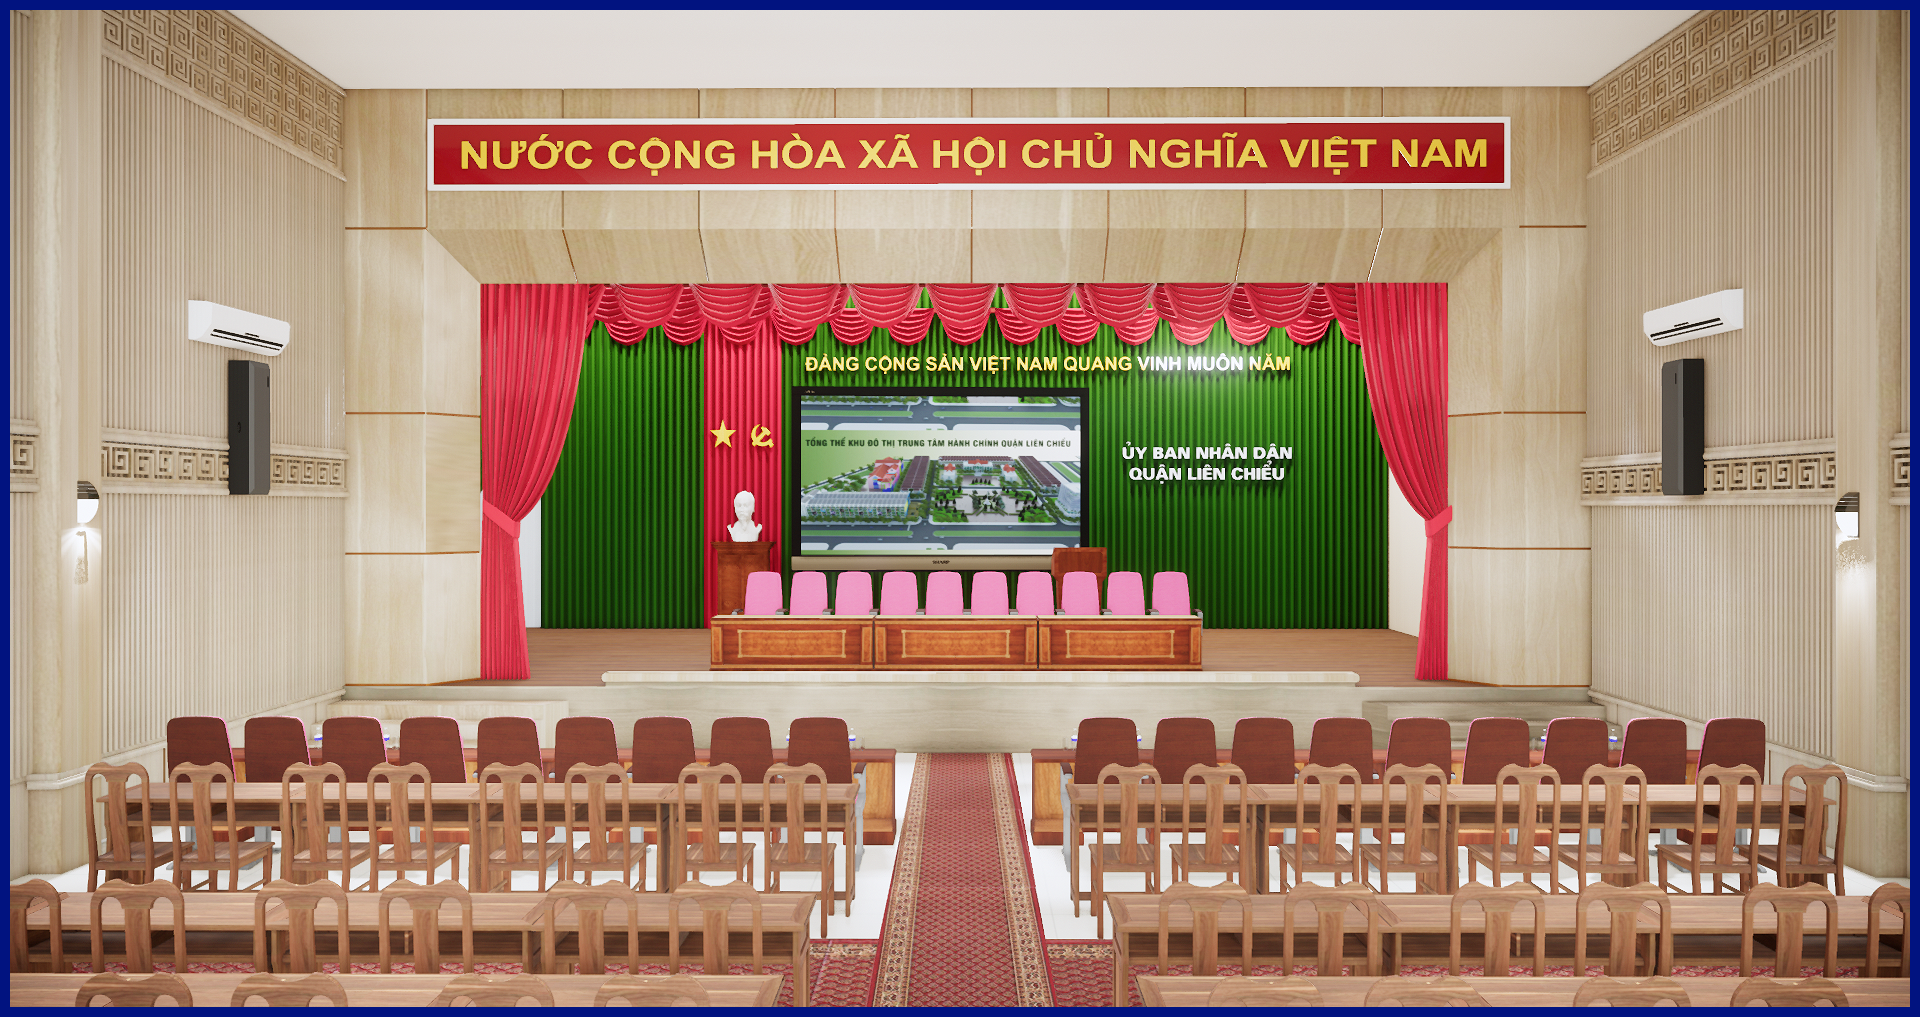 Thiết kế nội thất Công Trình Công Cộng tại Đà Nẵng CẢI TẠO NỘI THẤT HỘI TRƯỜNG QUẬN LIÊN CHIỂU ĐÀ NẴNG 1593486723 1